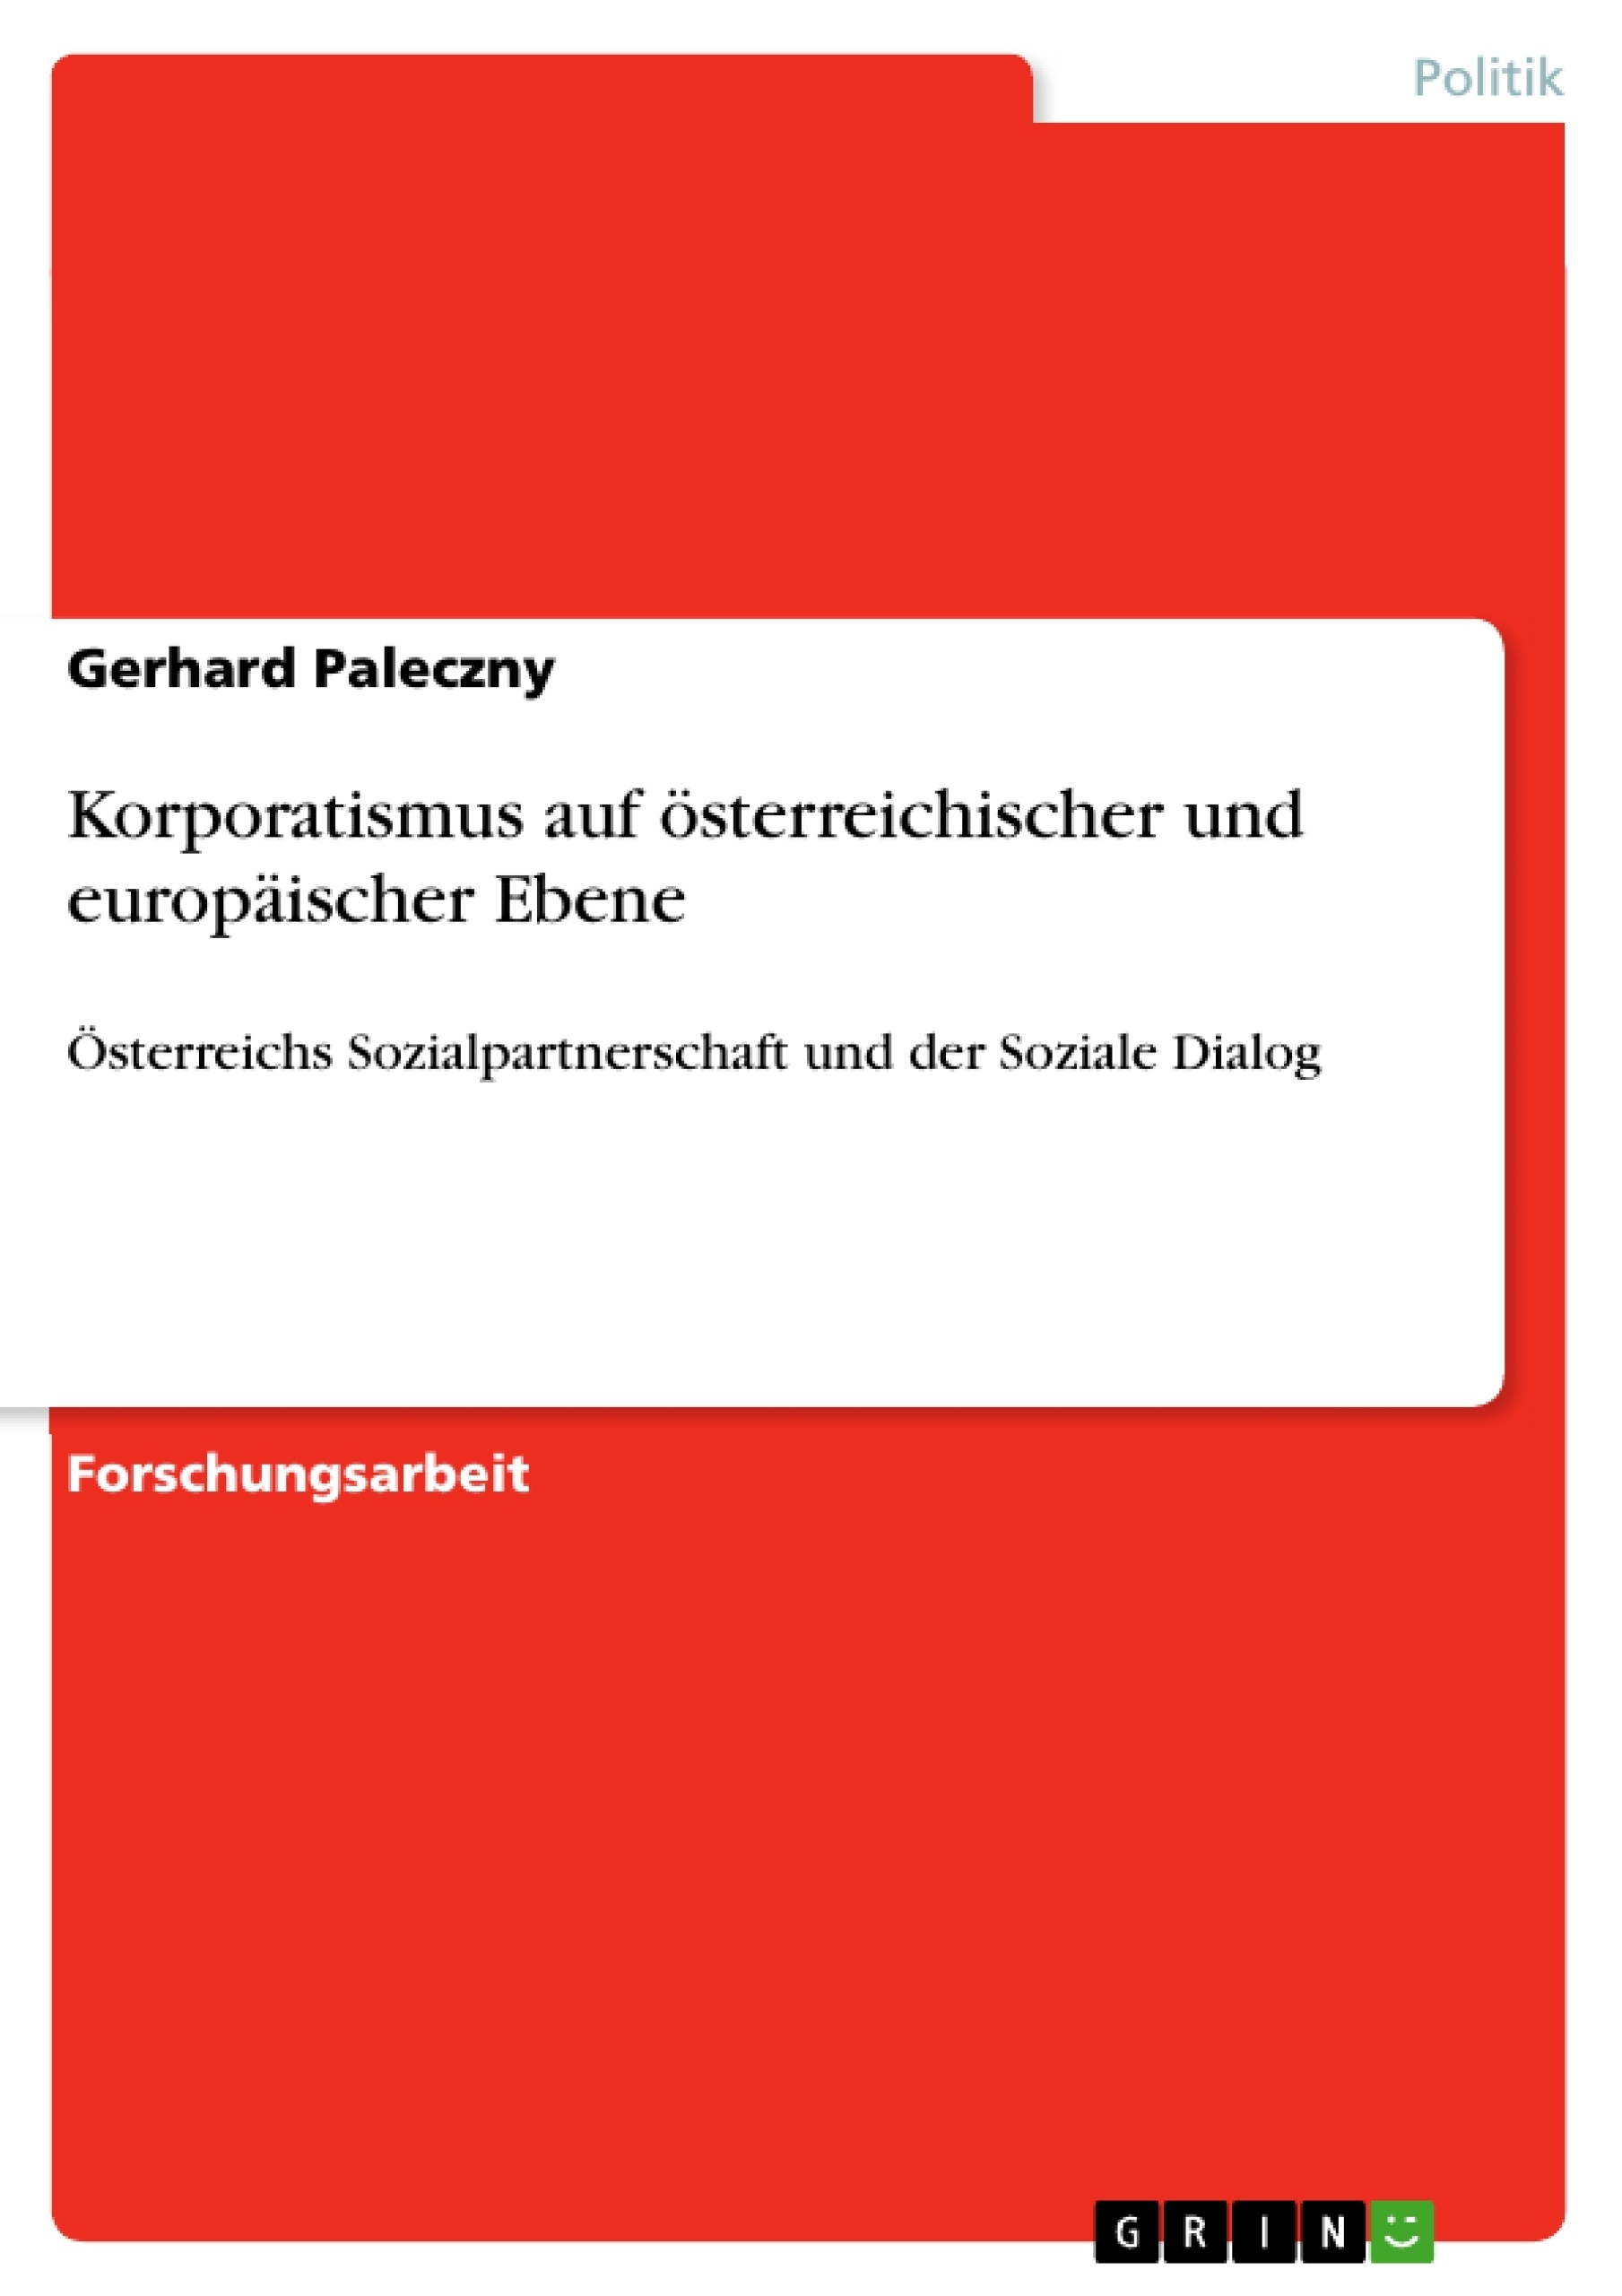 Title: Korporatismus auf österreichischer und europäischer Ebene